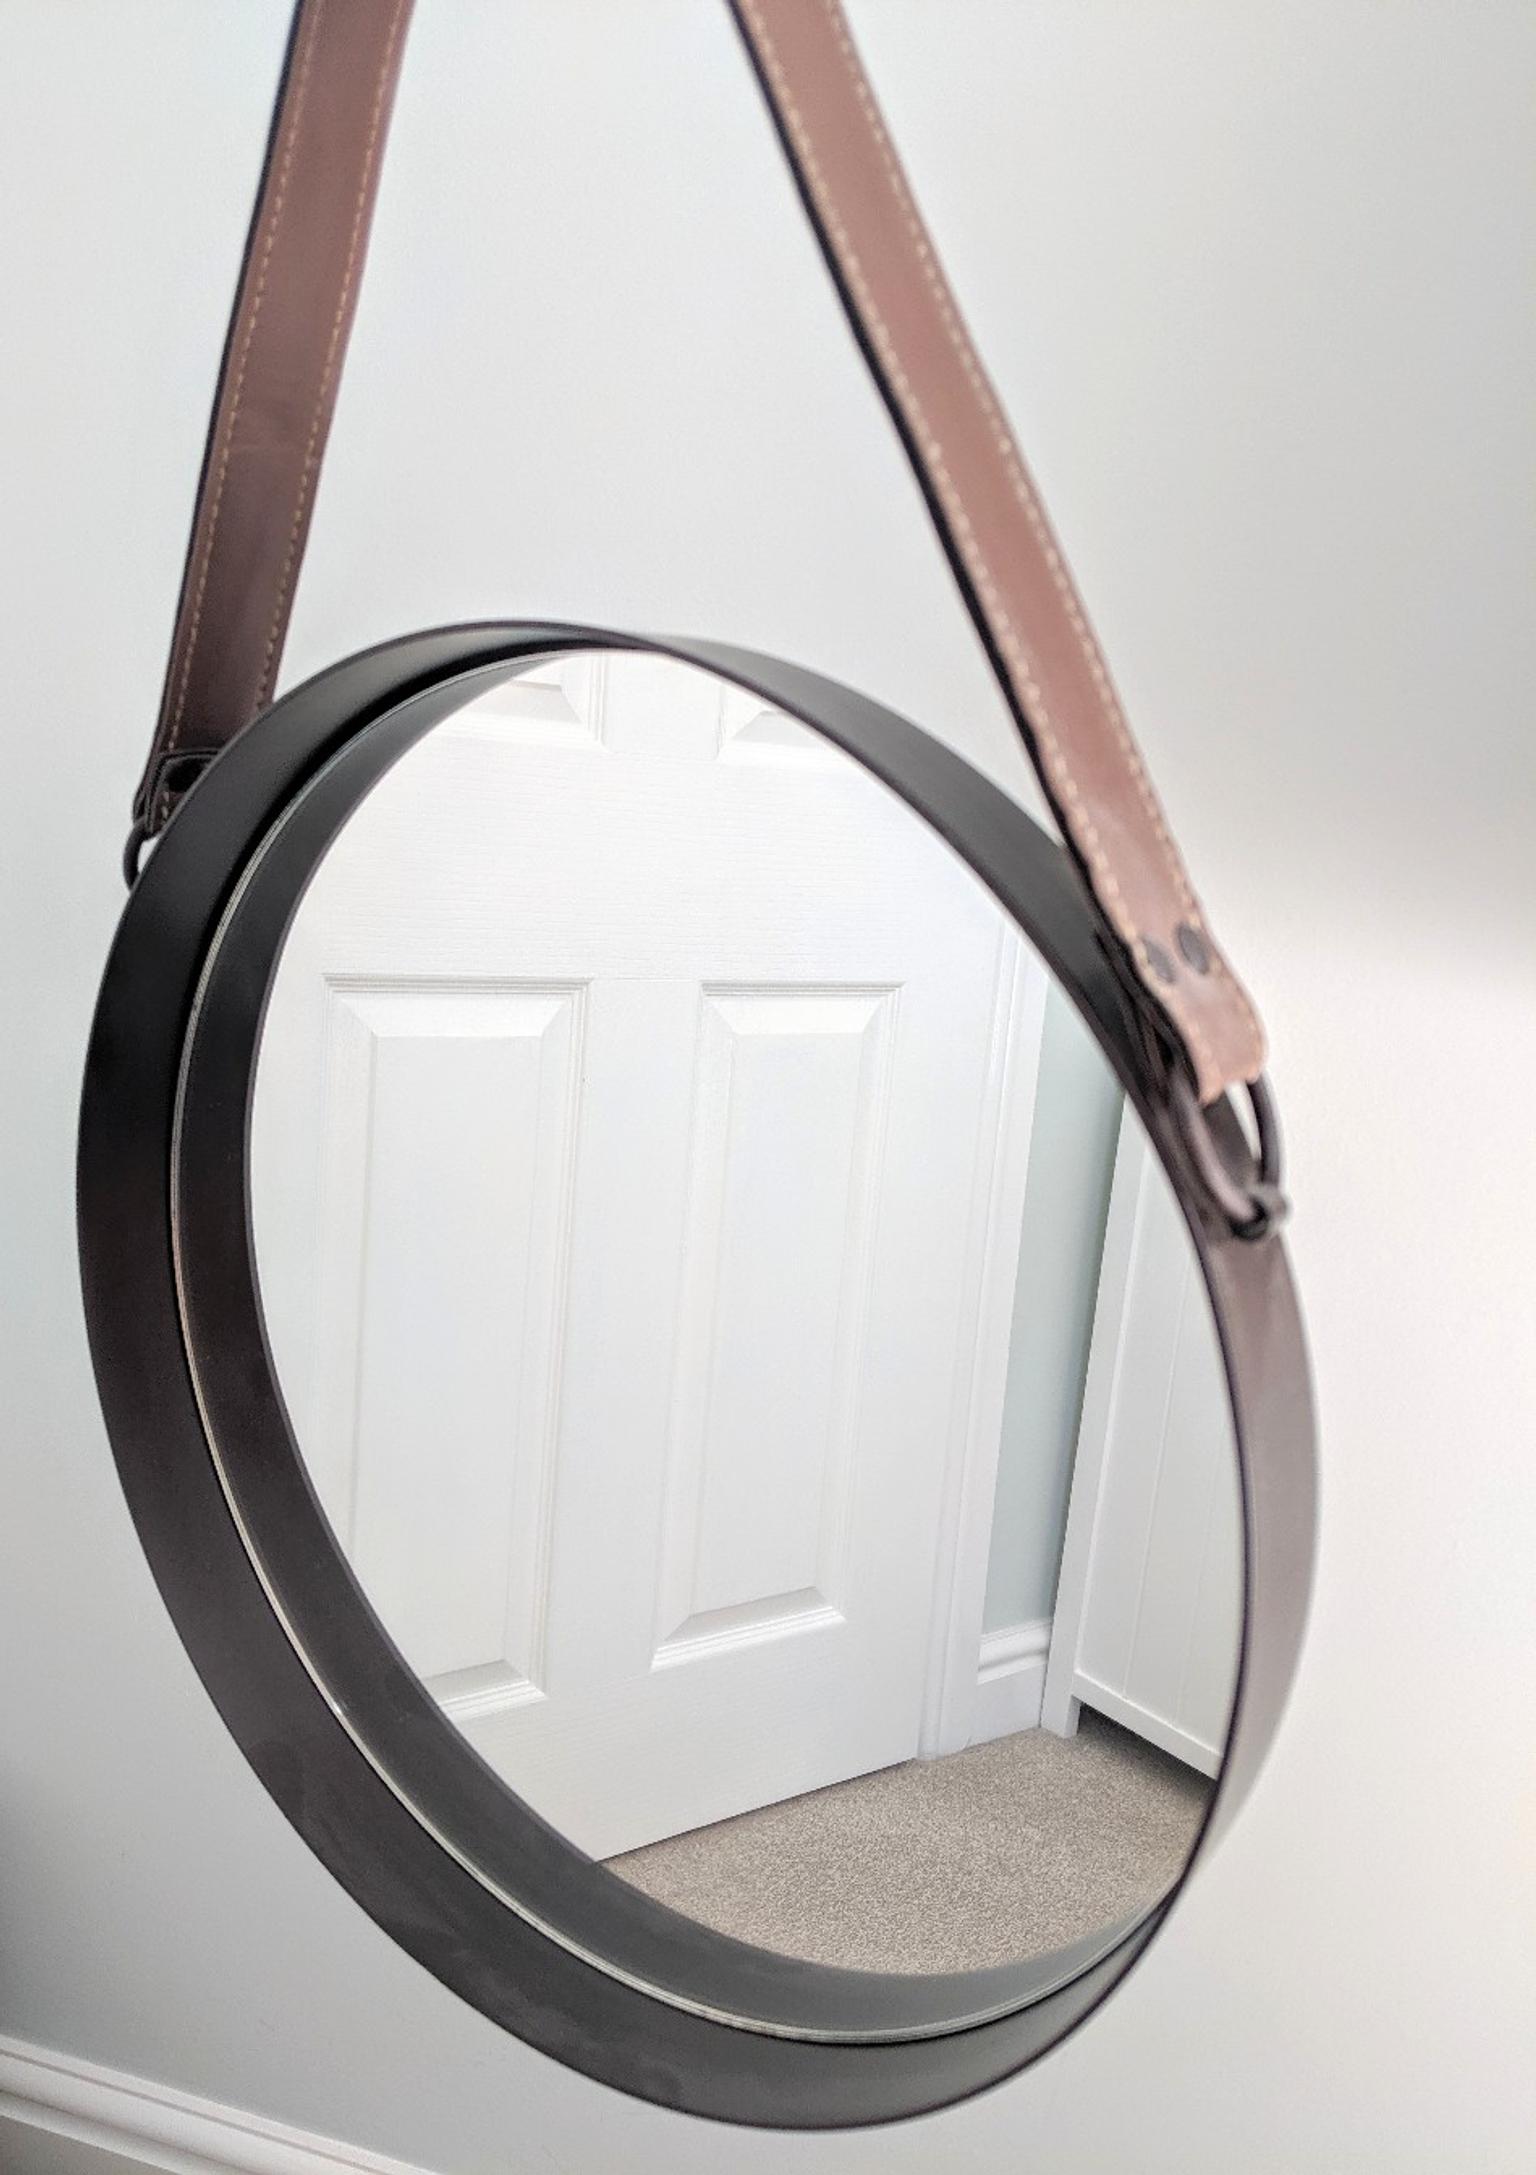 Round Mirror With Leather Strap Detail, Round Mirror With Leather Strap The Range